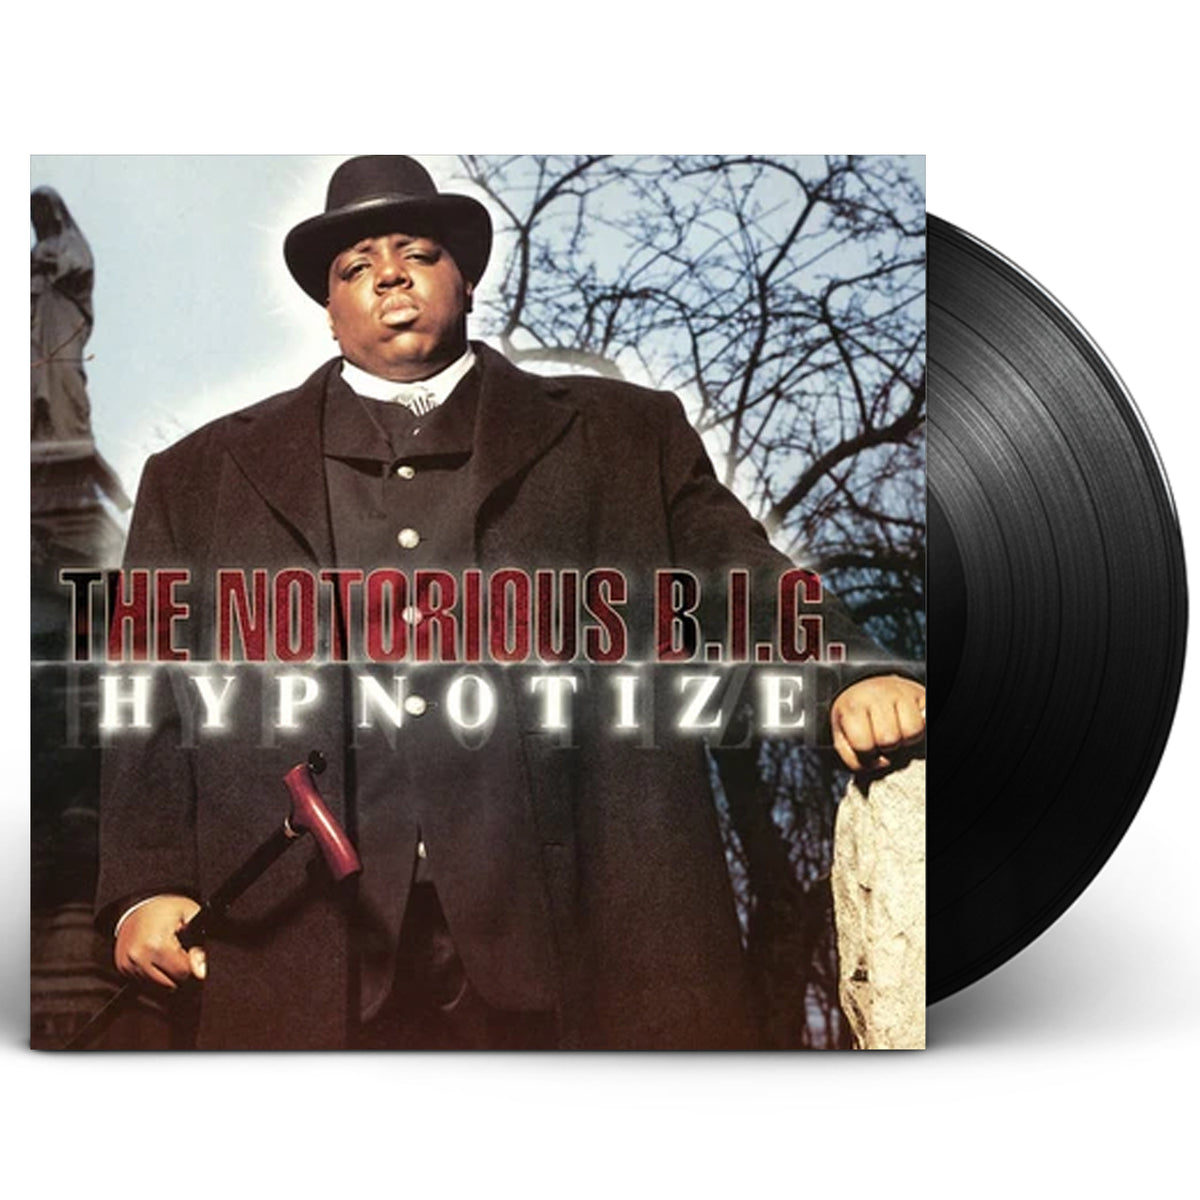 The Notorious B.I.G. - Hypnotize (Bonzi Buddy Cover)